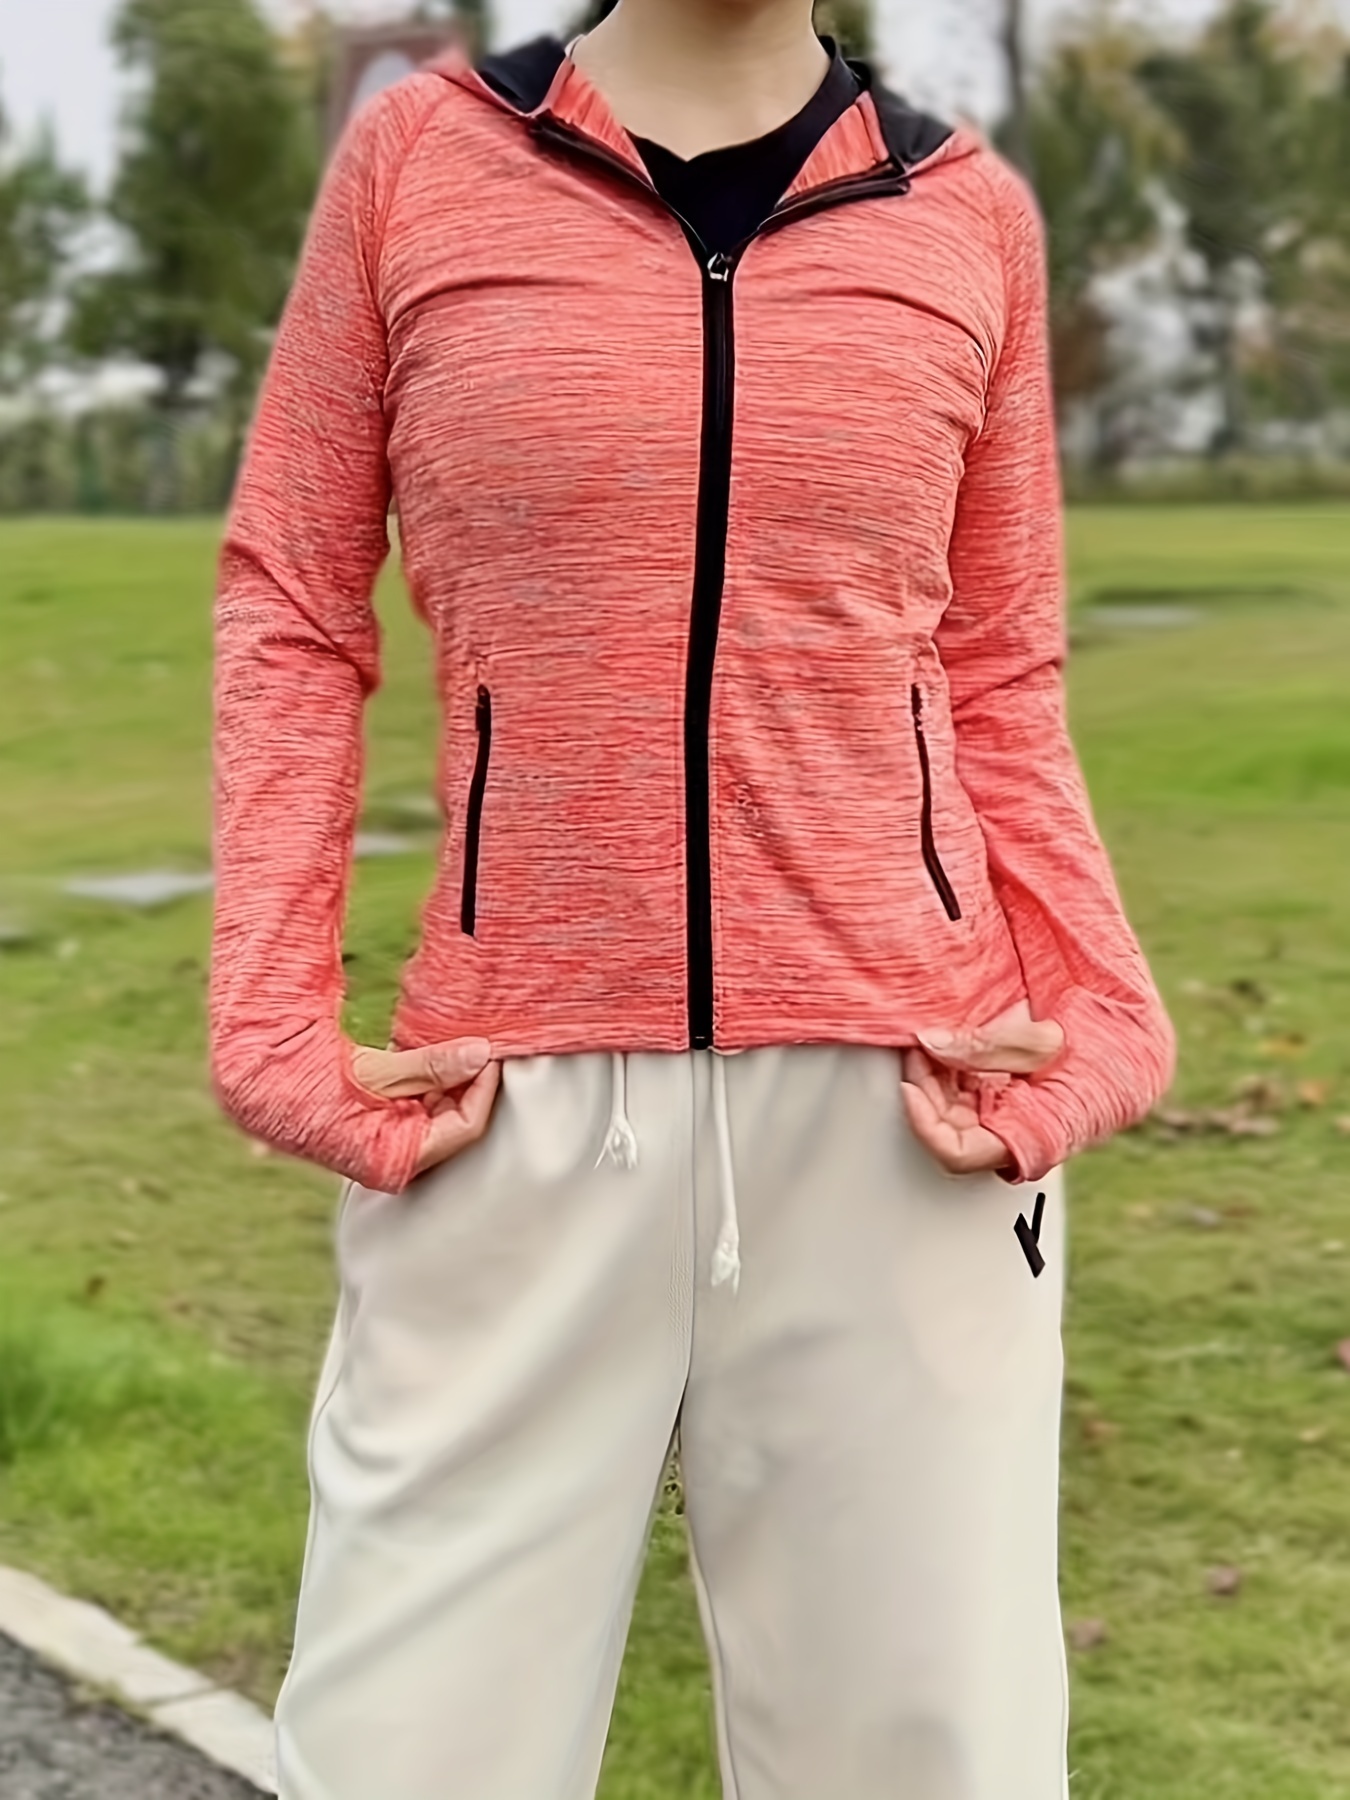 Sudadera deportiva transpirable con capucha para mujer